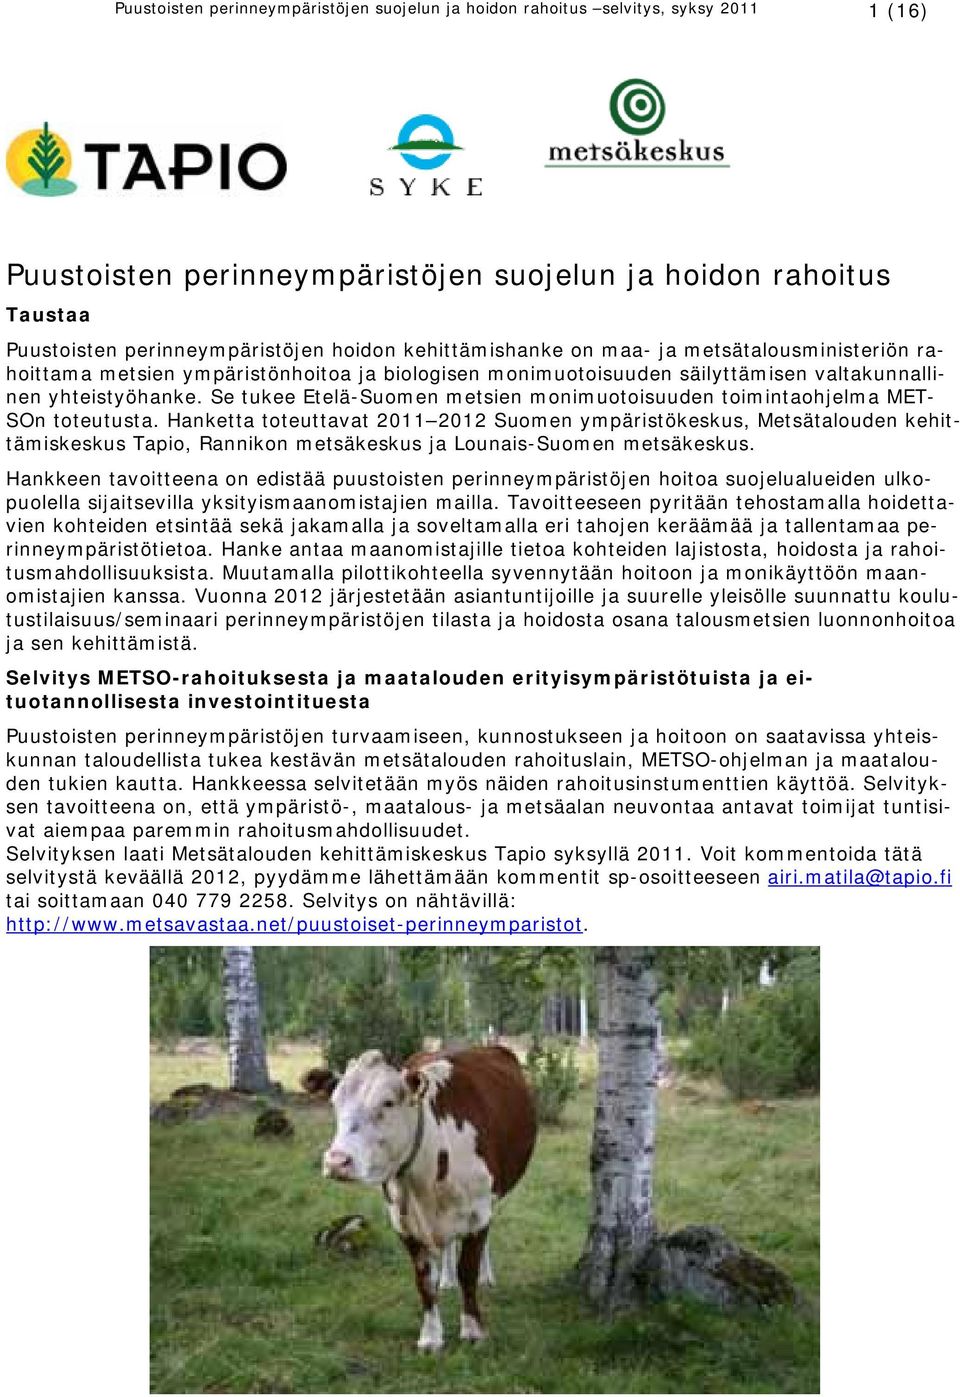 Se tukee Etelä-Suomen metsien monimuotoisuuden toimintaohjelma MET- SOn toteutusta.